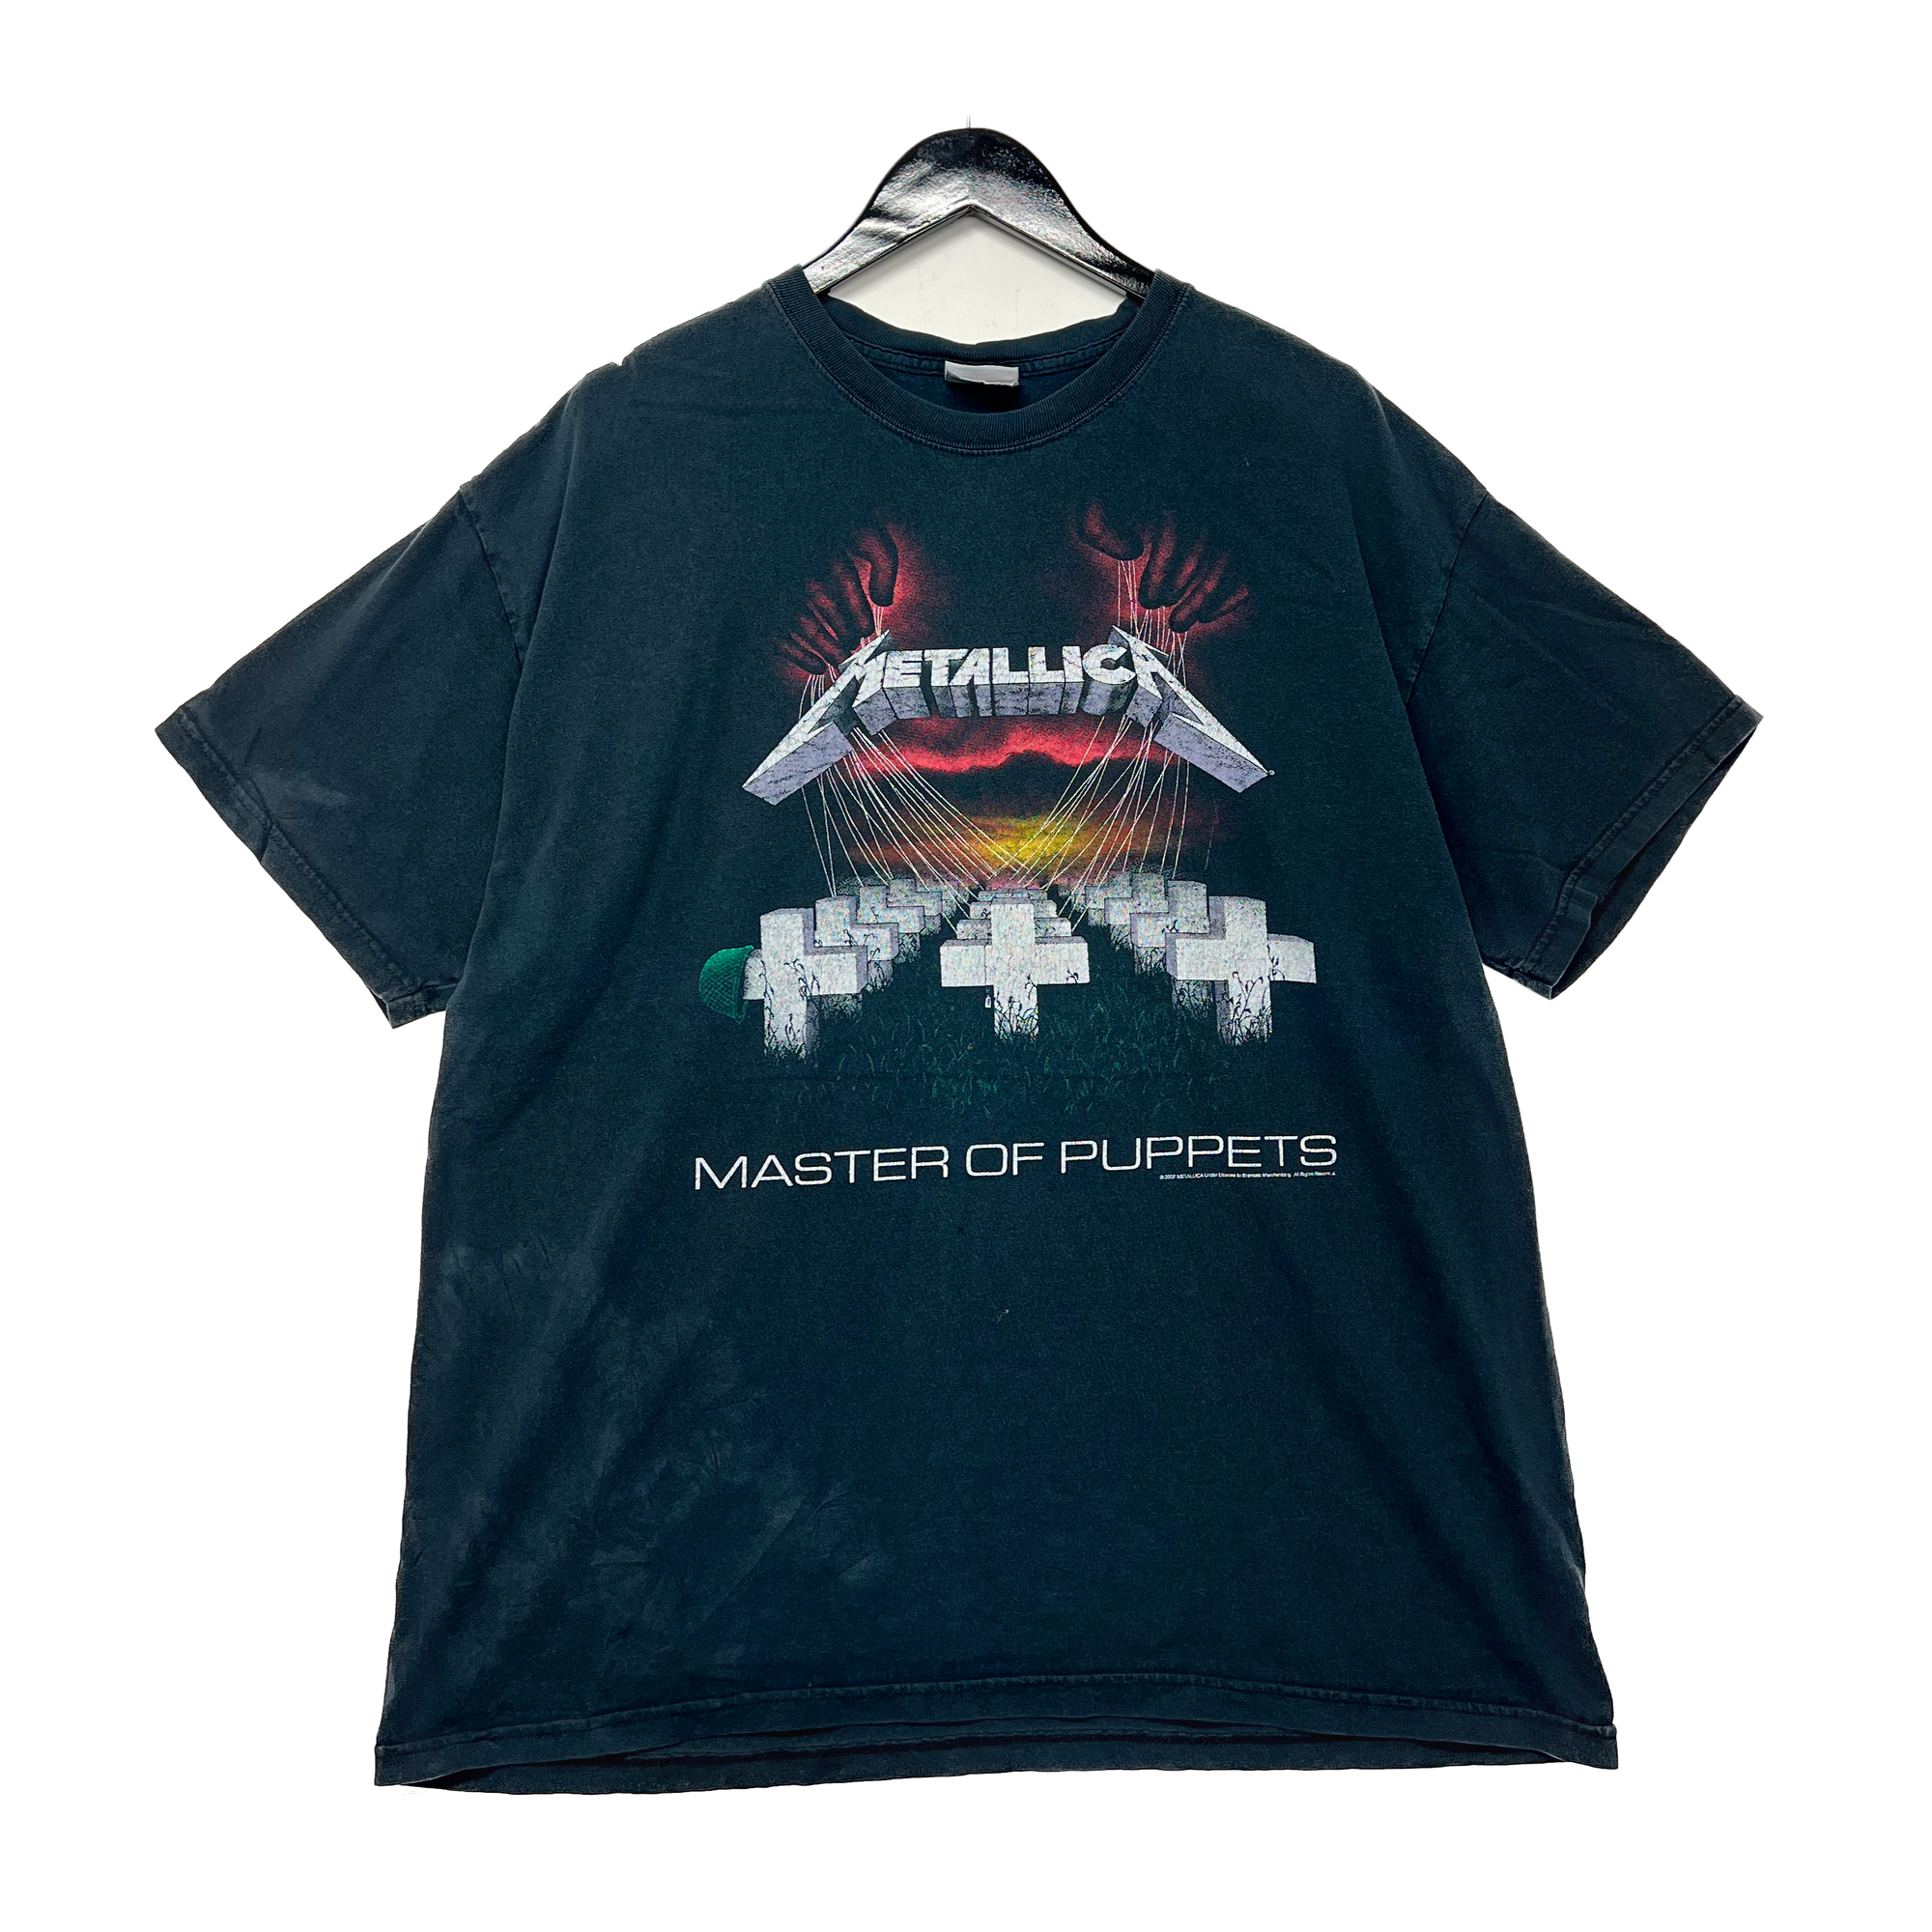 Metallica T-shirt Size XL